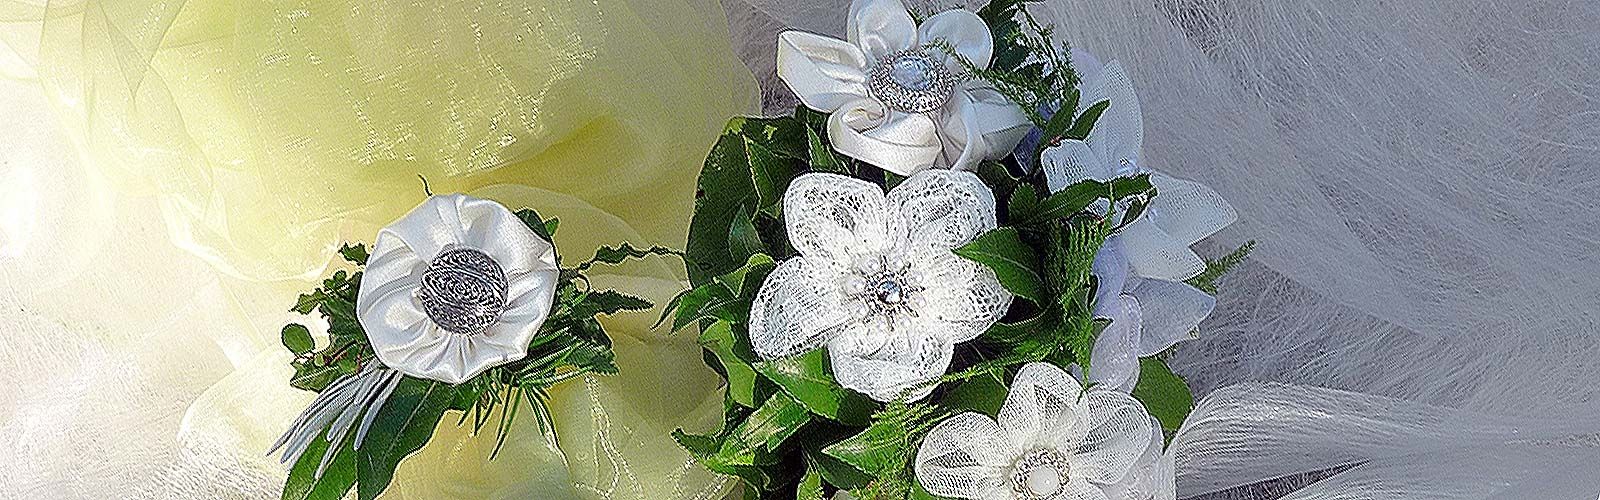 Blumen Ahland - Selm - Hochzeitsfloristik bei Blumen Ahland in Selm